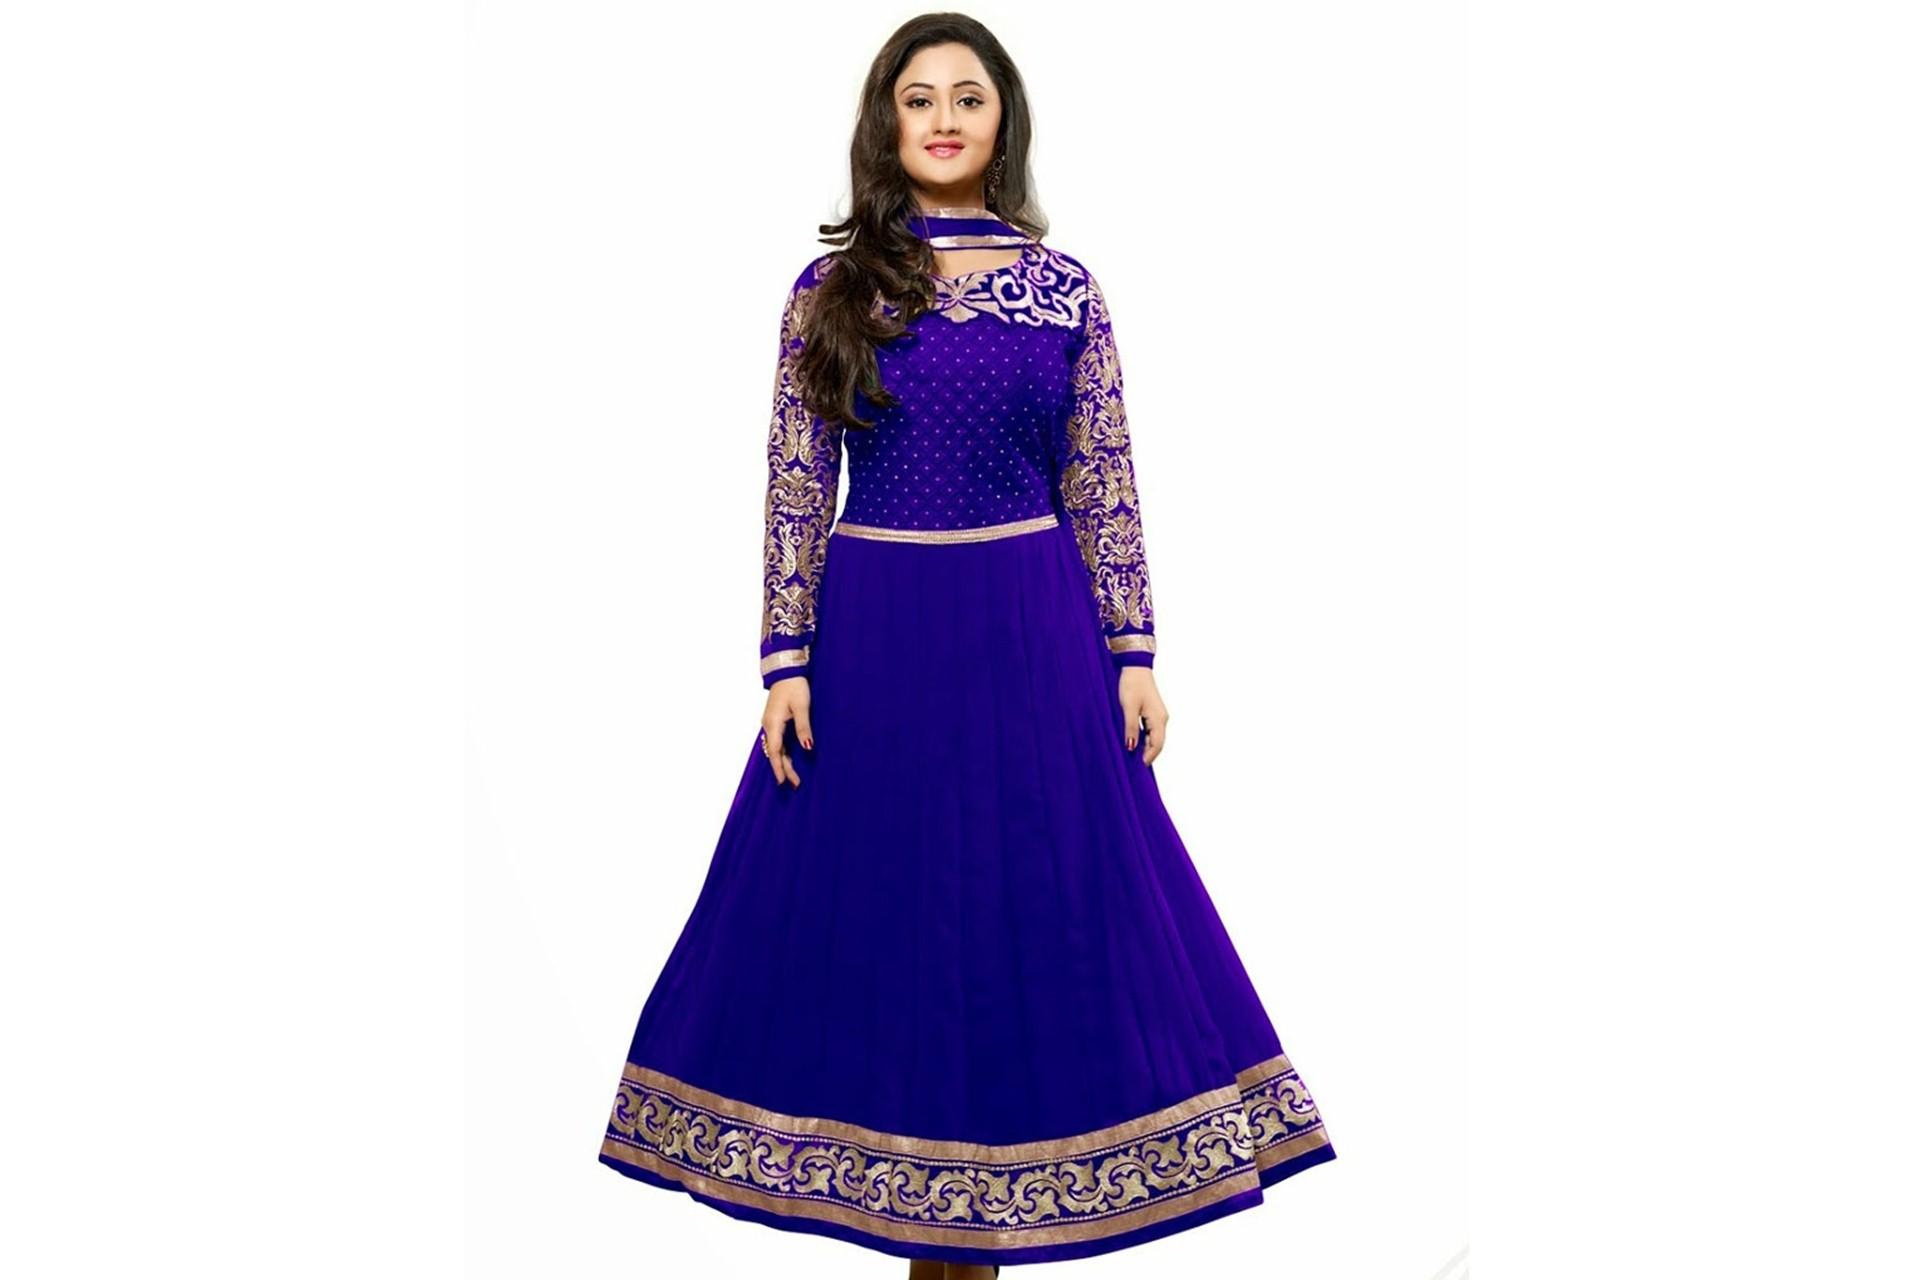 Rashmi Desai Blue Dress Wallpaper 02333